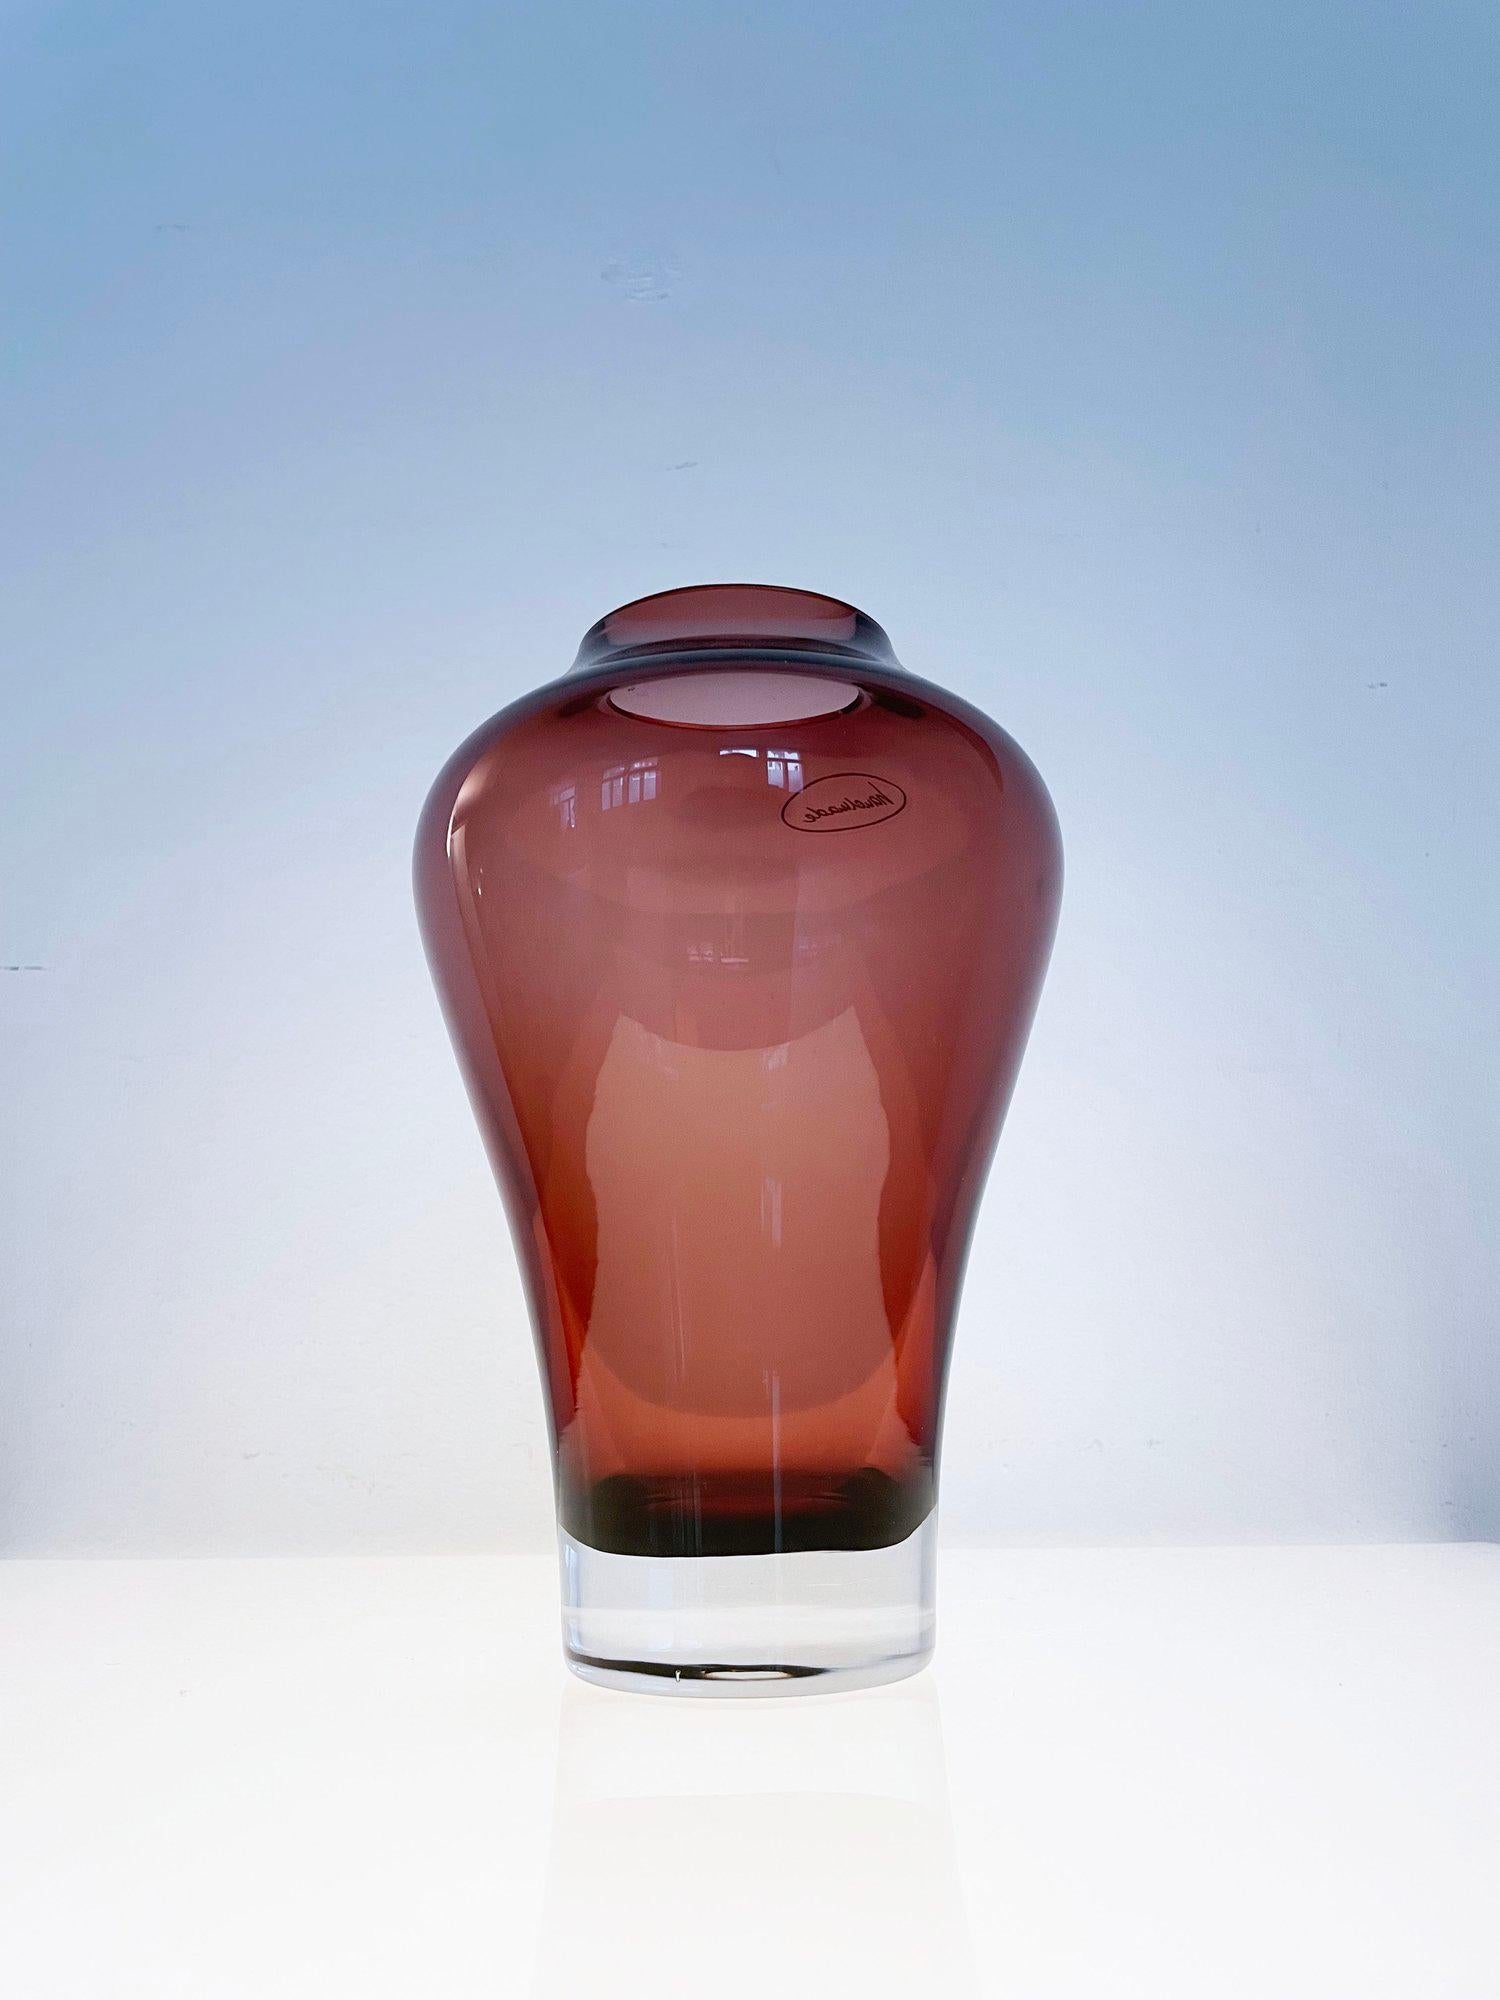 Vase en verre en forme de poire fabriqué à la main par Villeroy & Boch. Marque du fabricant inscrite sur la base. Verre de couleur vin avec une forme organique. A utiliser comme récipient décoratif ou fonctionnel pour contenir des fleurs ou d'autres